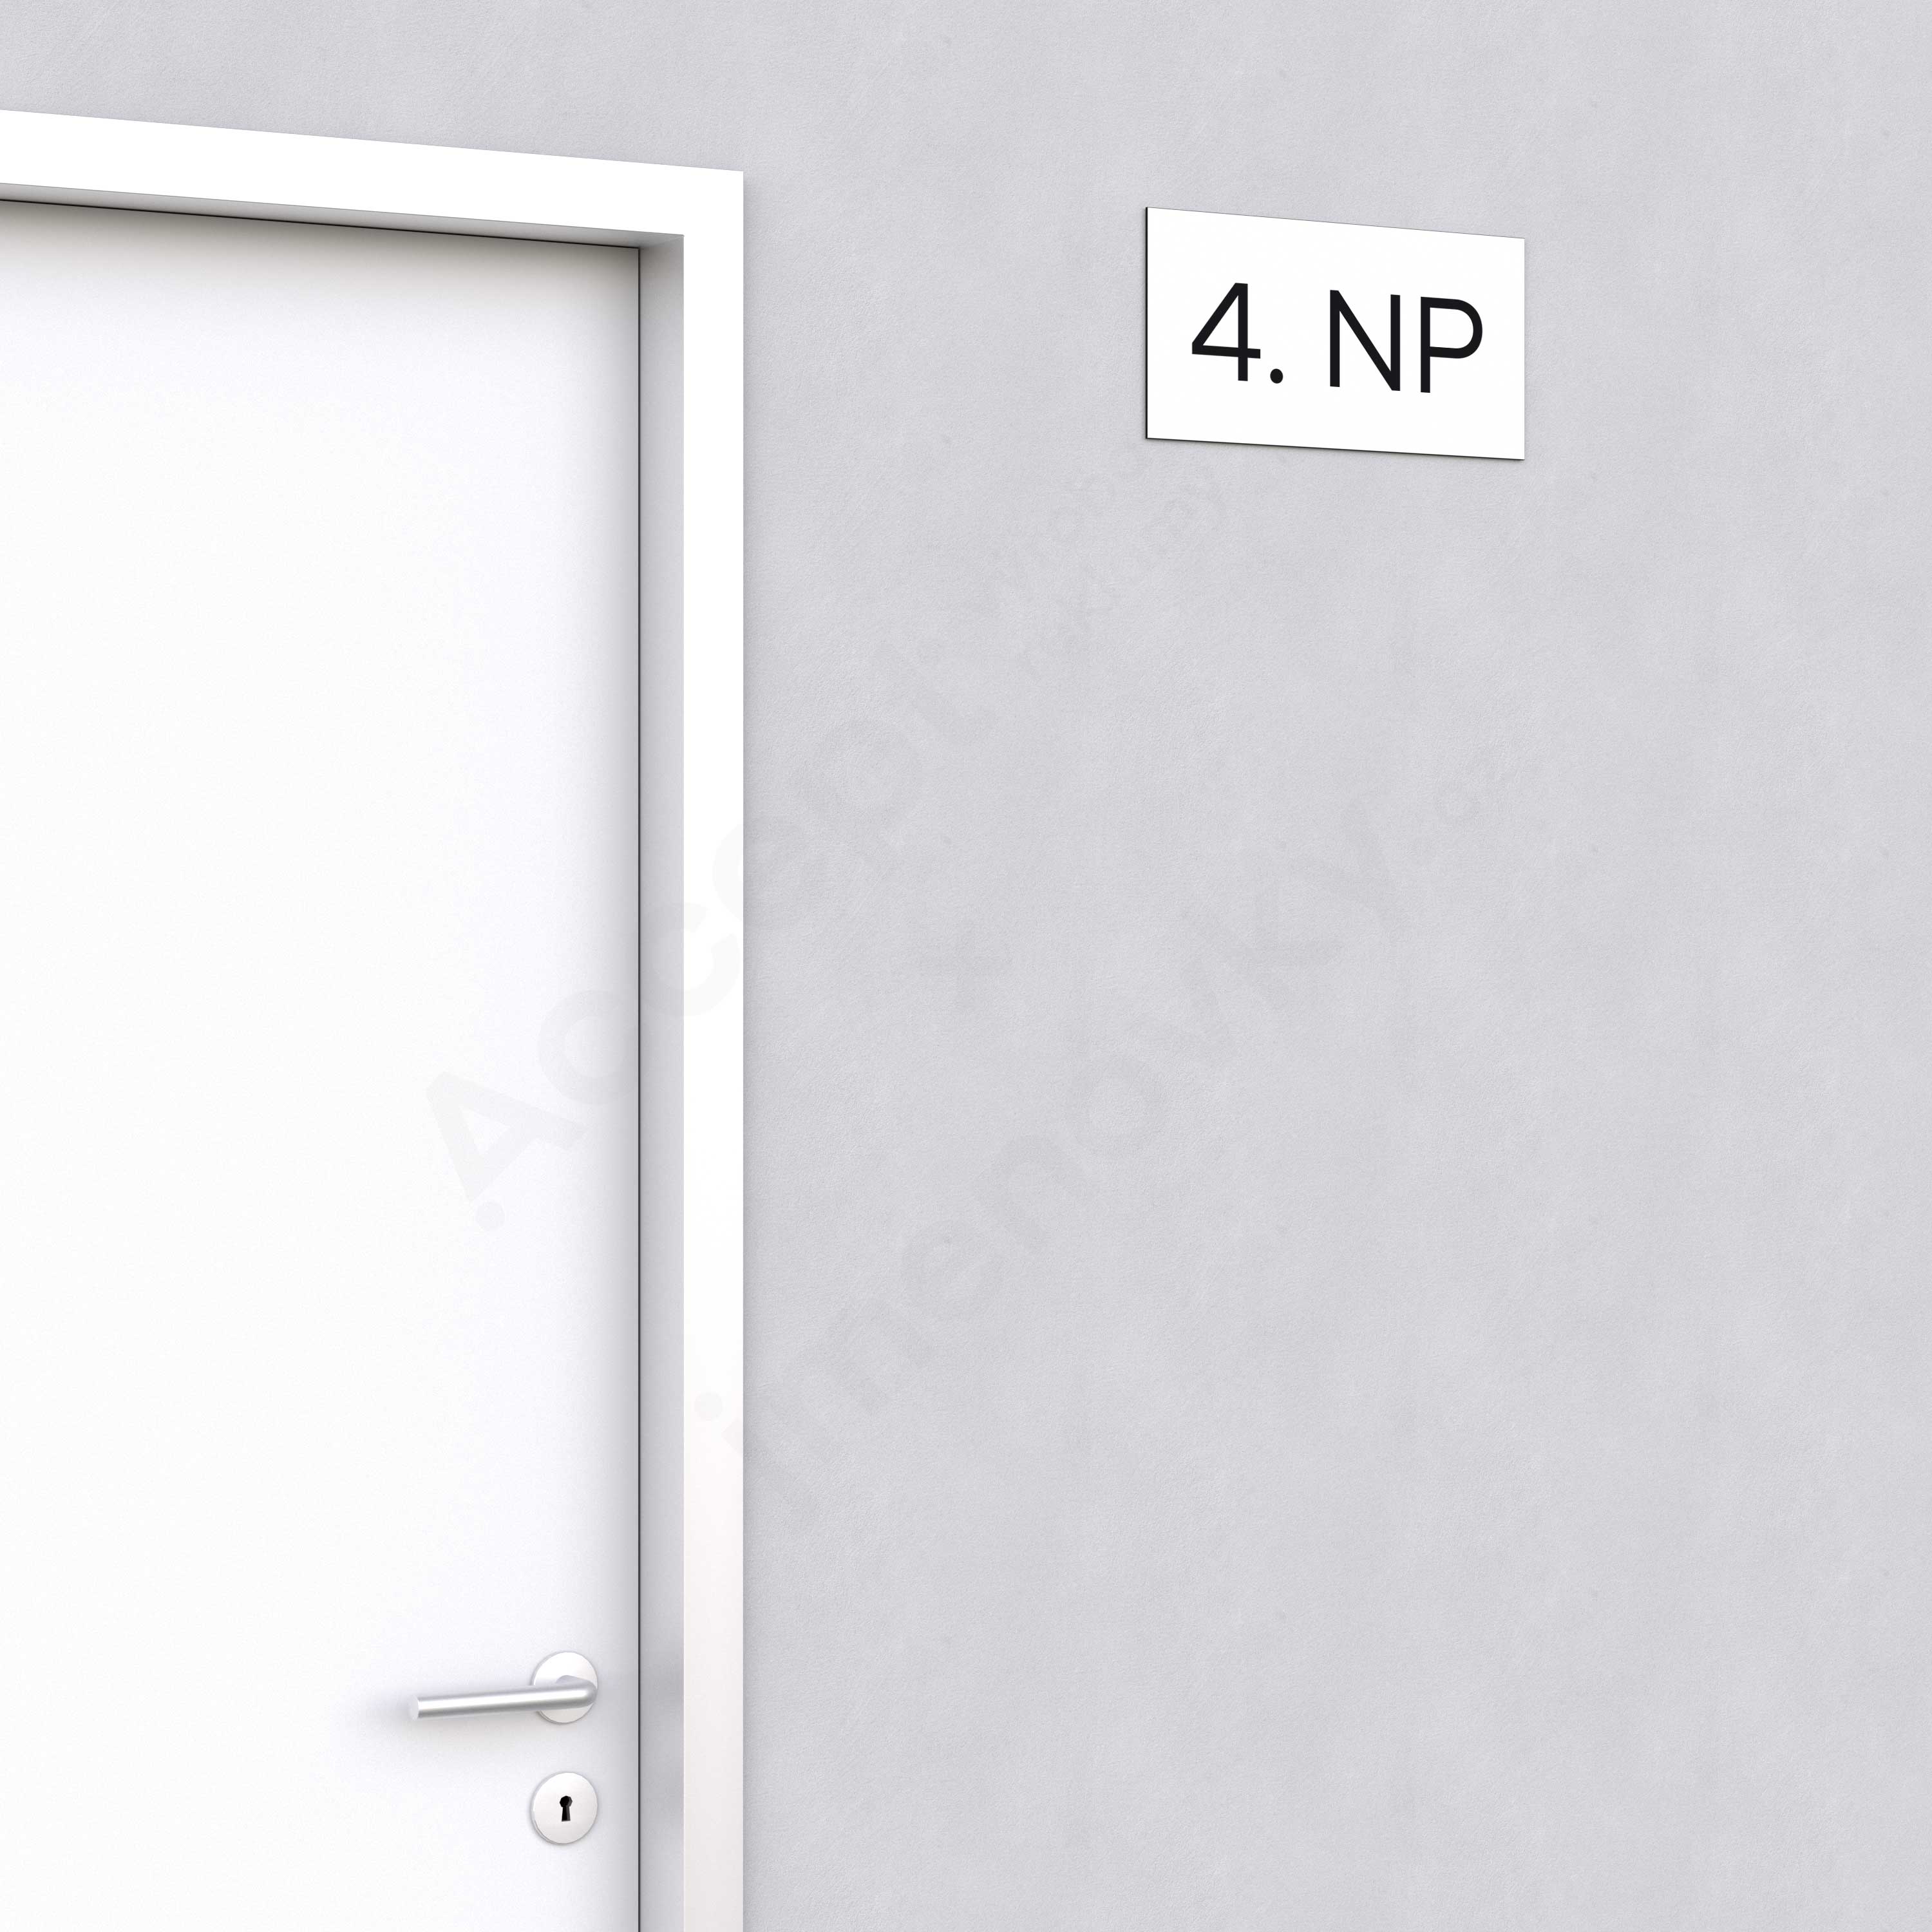 Označení podlaží "4. NP" - bílá tabulka - černý popis - náhled